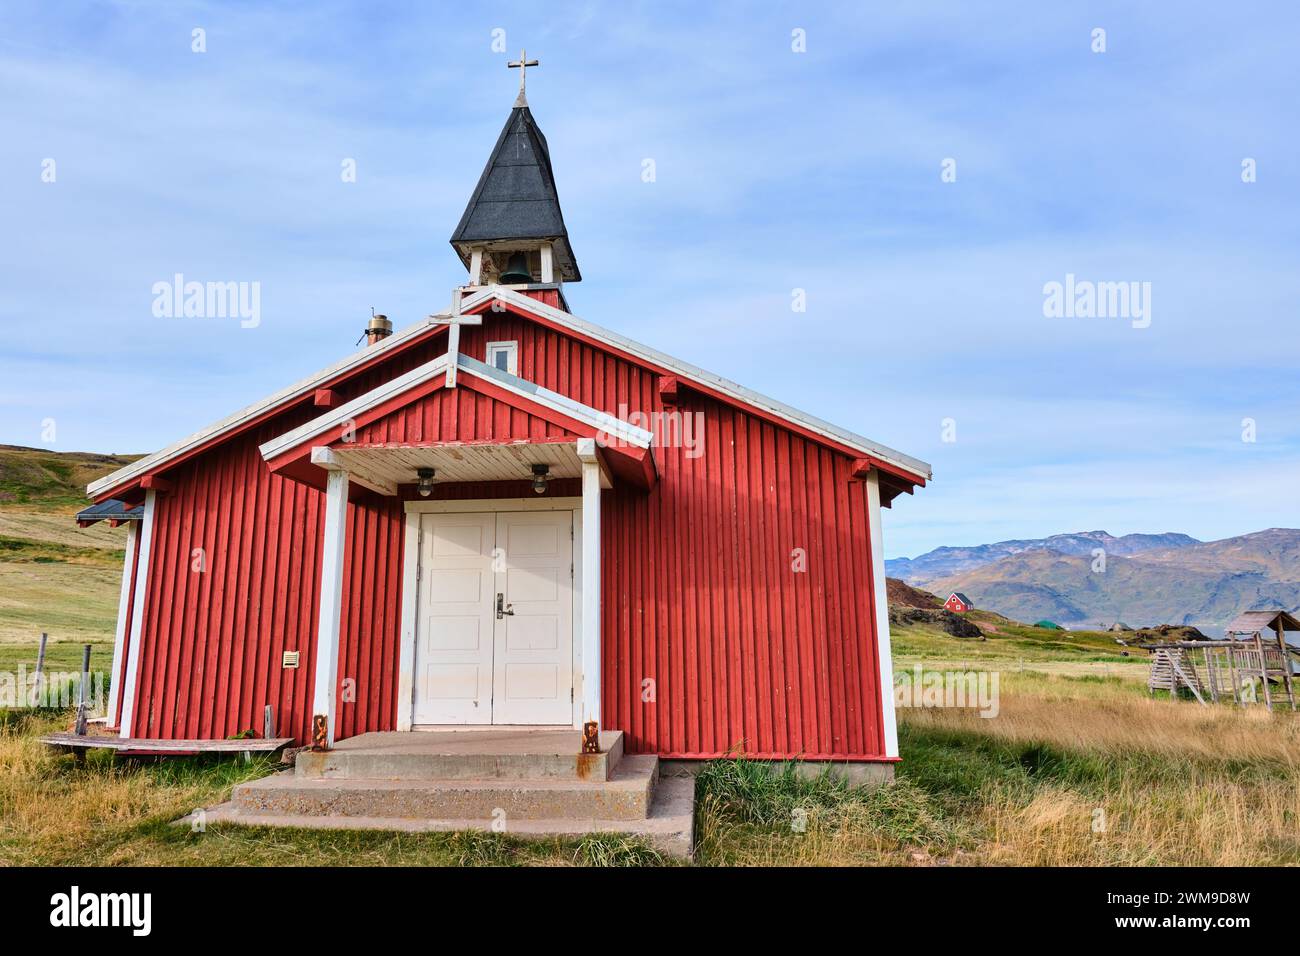 Rote Kirche Qassiarssuk, Grönland. In der Ferne befindet sich die ursprüngliche Kirche in Brattahlíð, Grönlands erster nordischer Siedlung Stockfoto